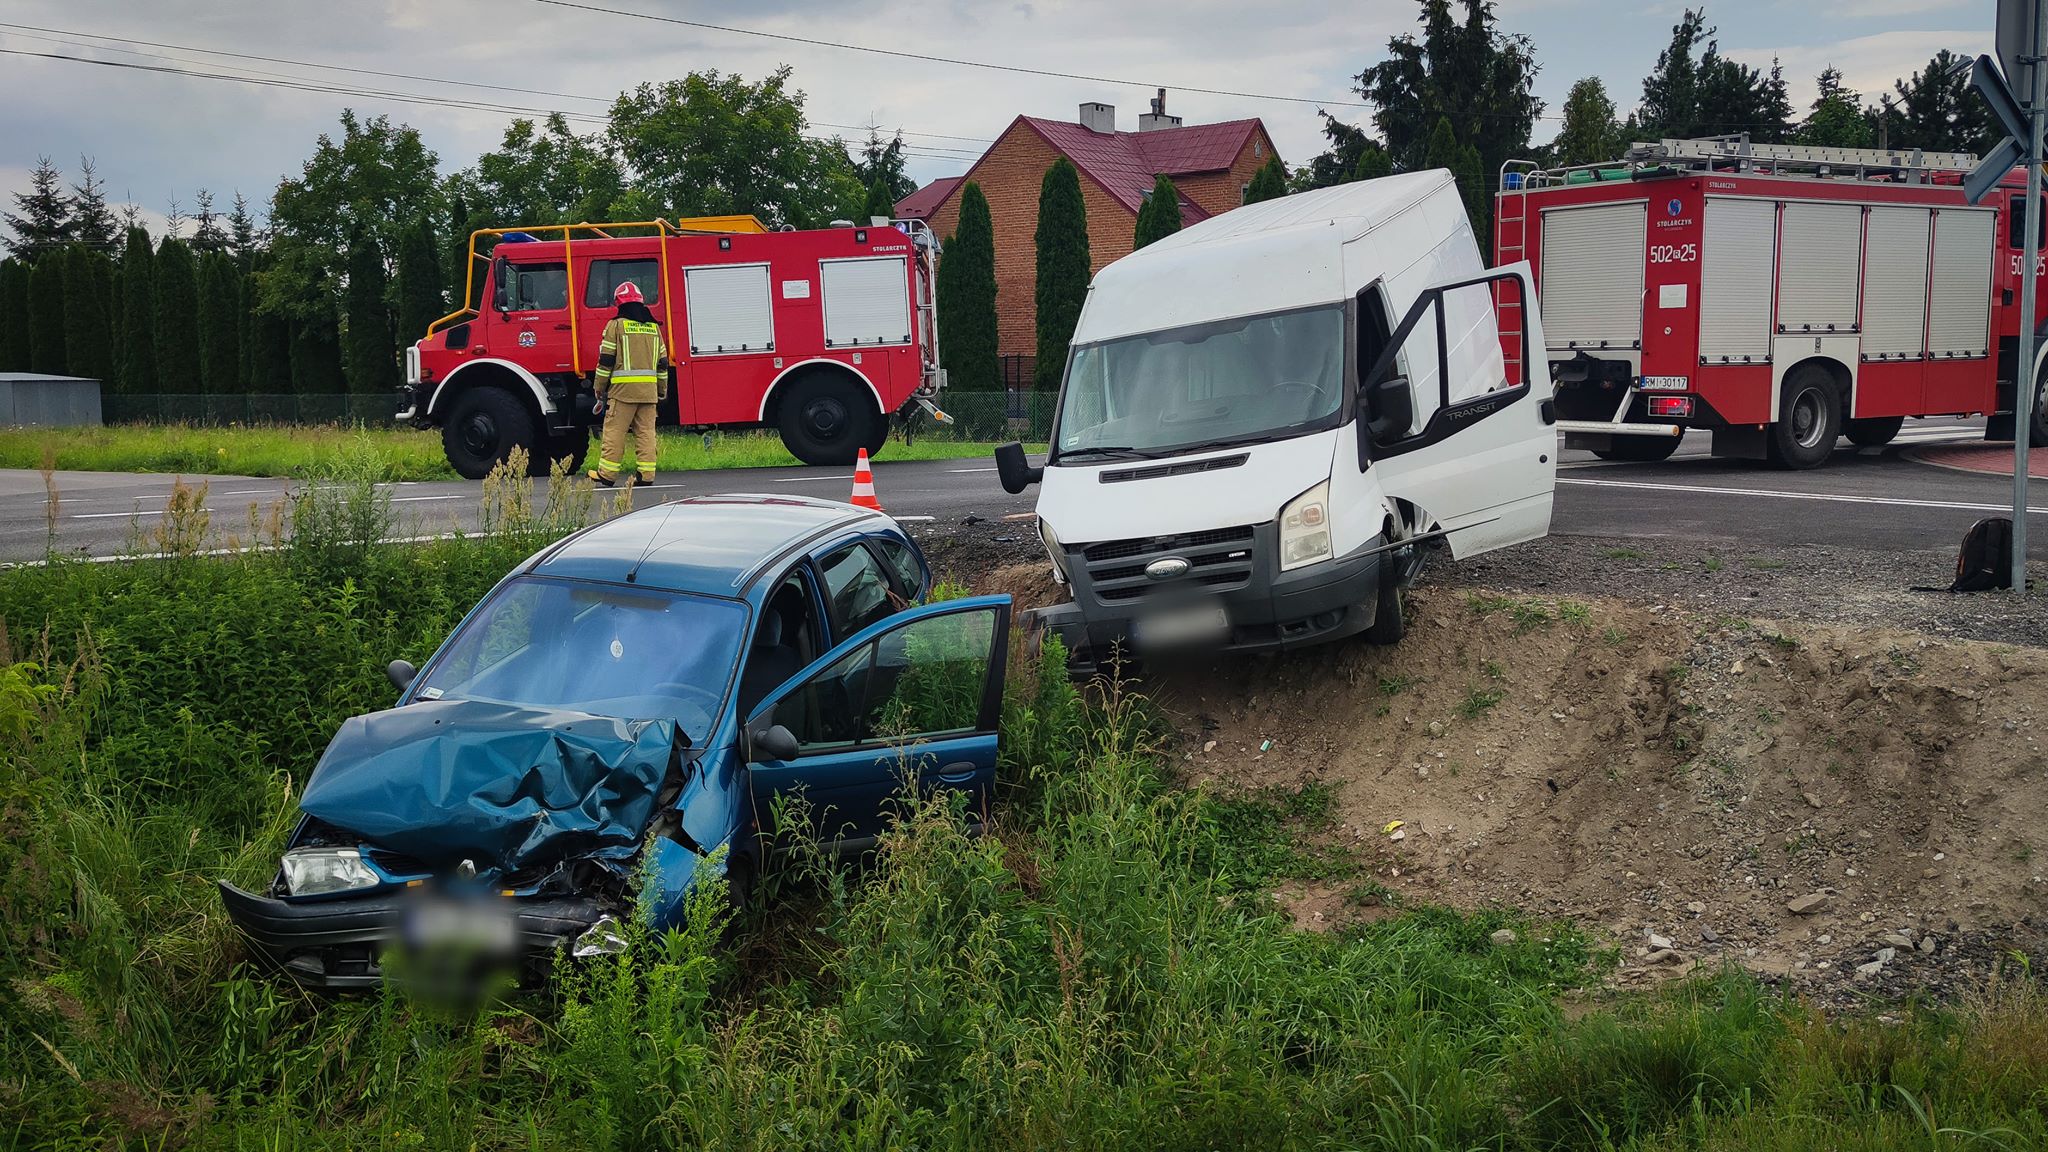 Wypadek na drodze Mielec - Tarnobrzeg. Jedna osoba trafiła do szpitala! [FOTO, VIDEO] - Zdjęcie główne